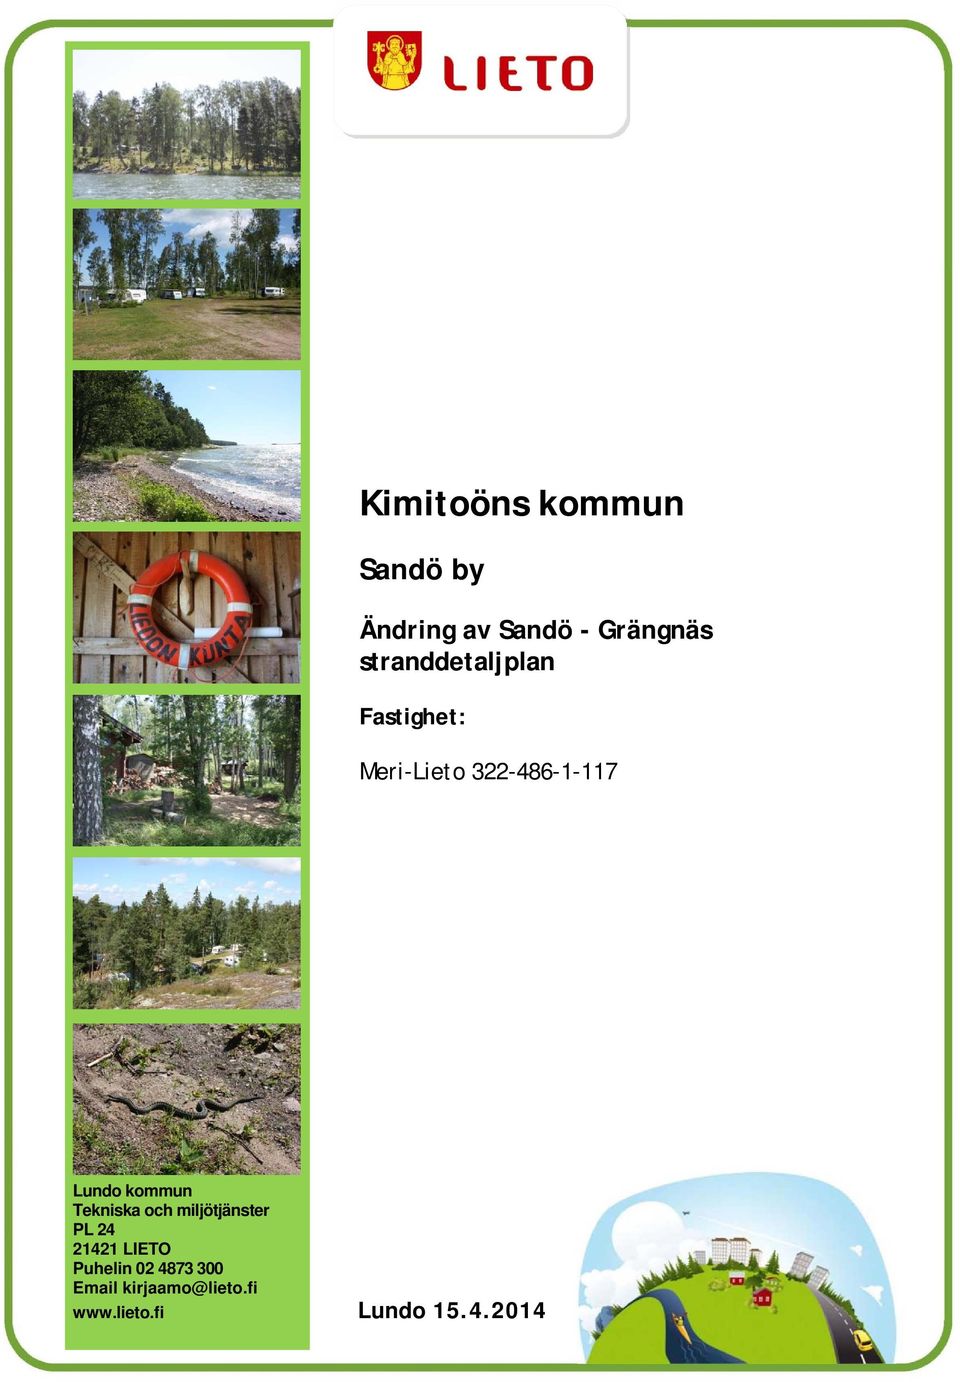 Fastighet: Meri-Lieto 322-486-1-117 Lundo kommun Tekniska och miljötjänster